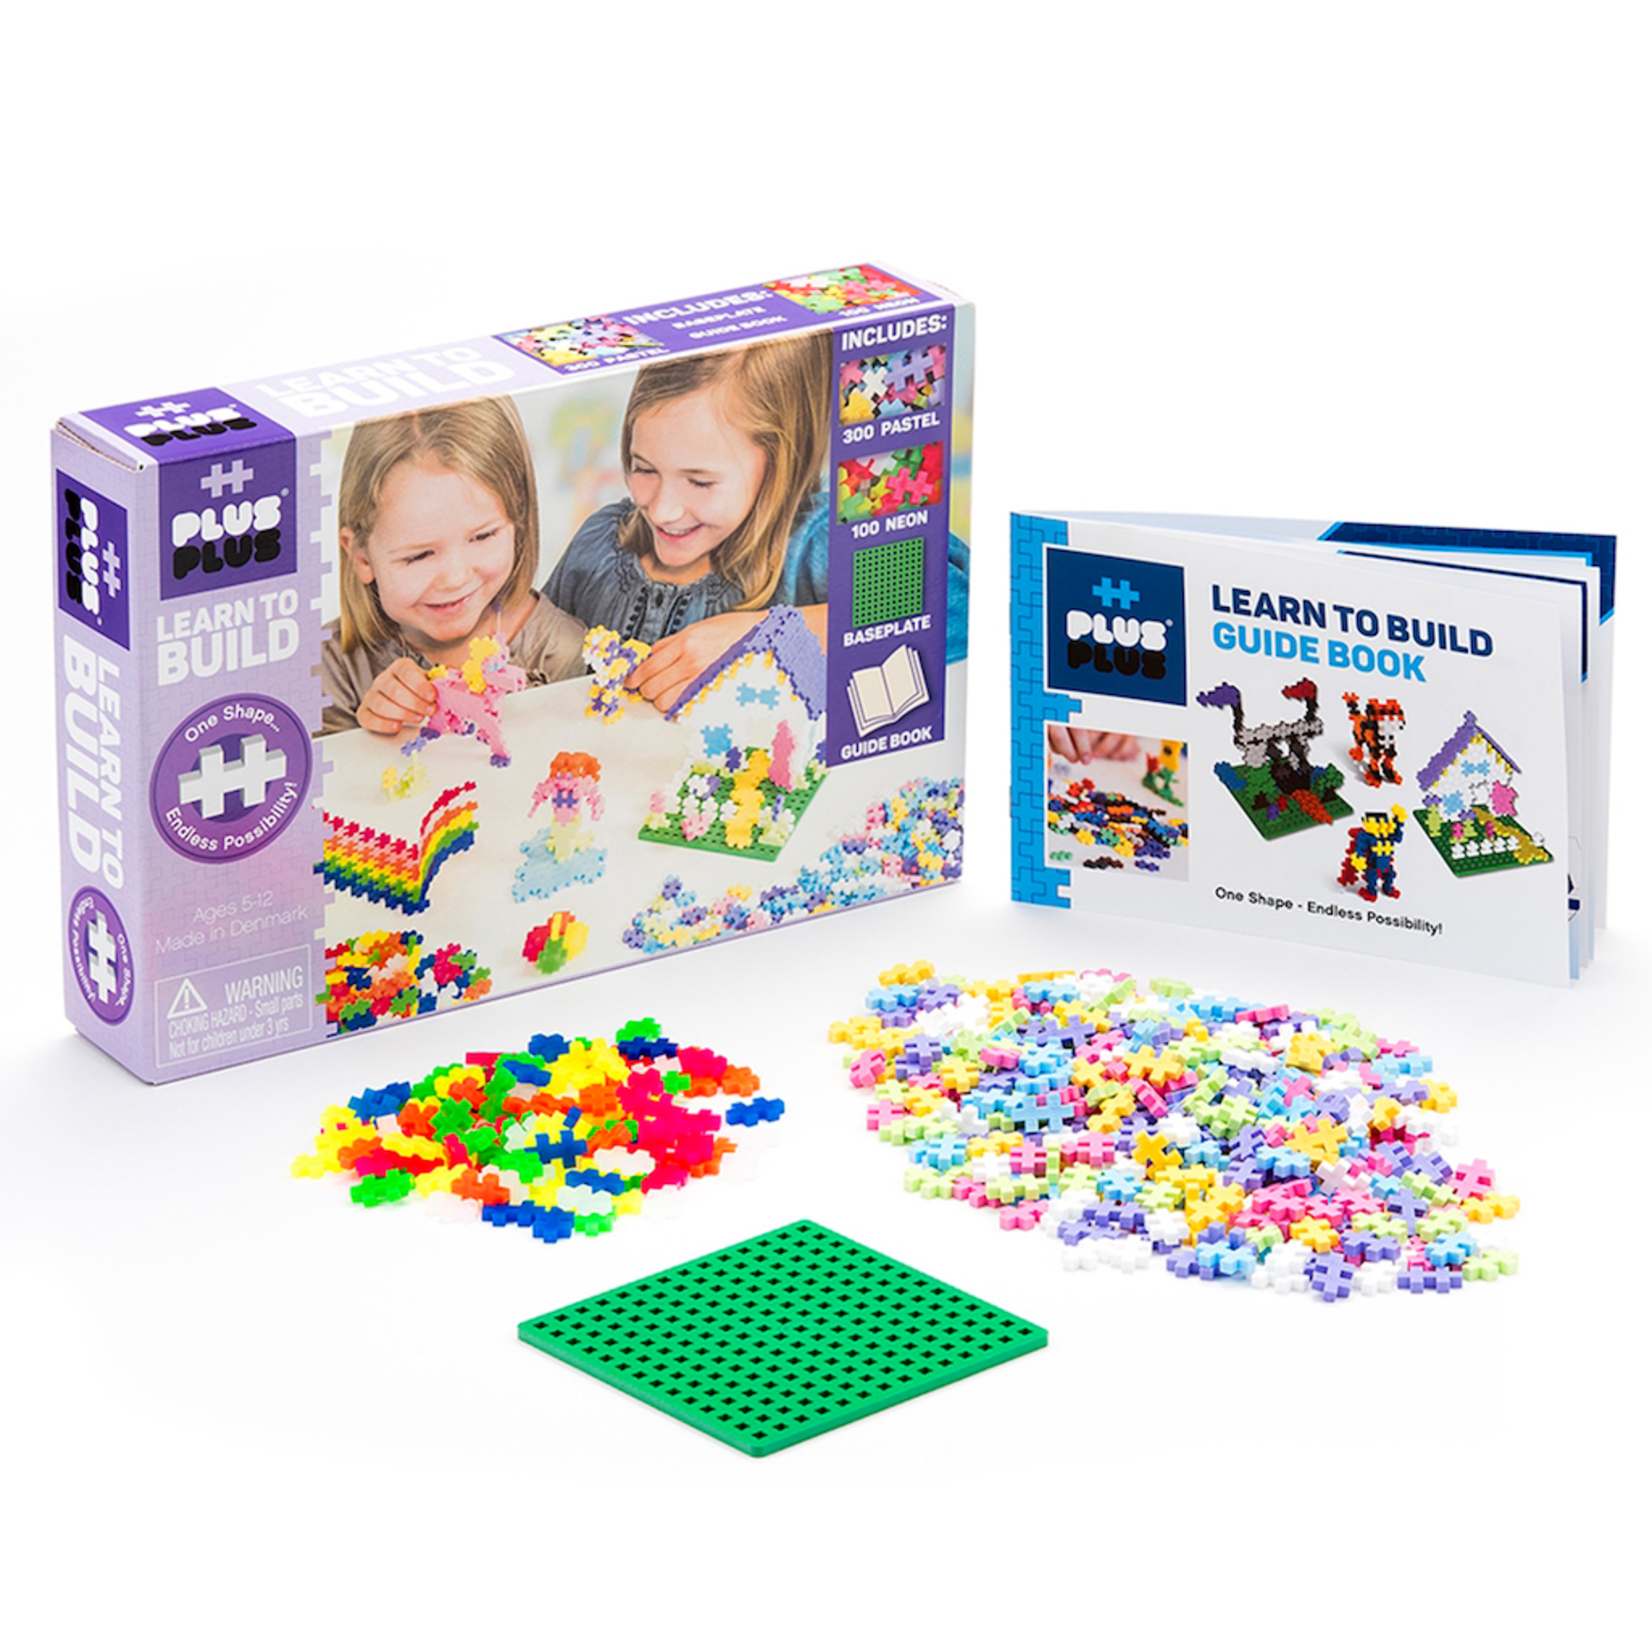 PlusPlus PLUSPLUS - Learn to build creative kit - Pastel - 400 pieces